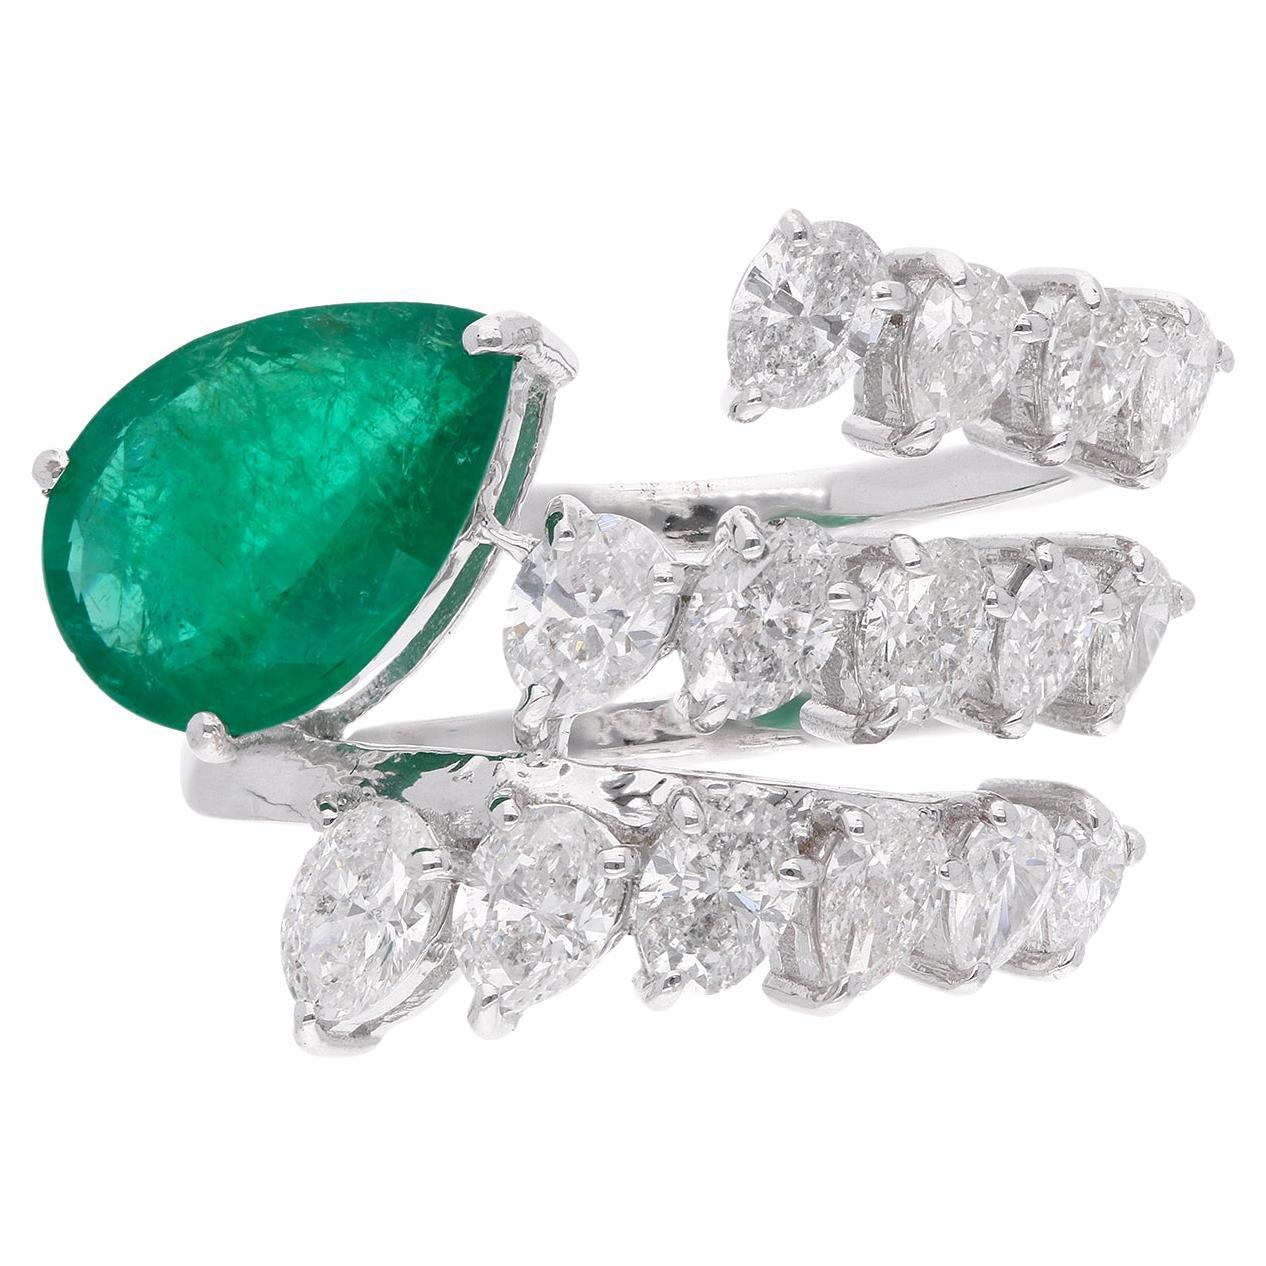 Zambian Emerald Gemstone Spiral Ring Oval Diamond 18 Karat White Gold Jewelry